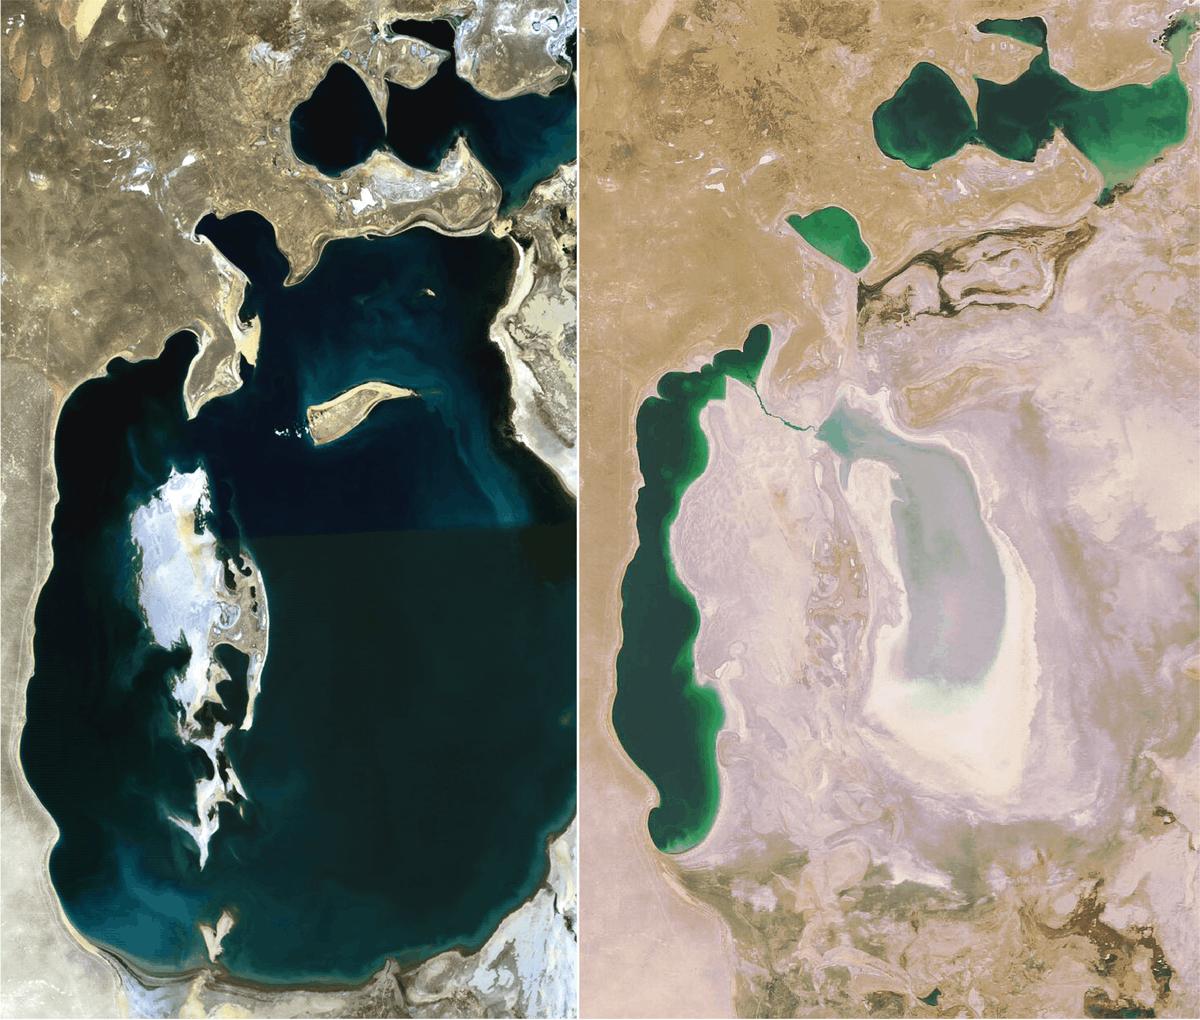 Des images satellite de la Mer d'Aral en 1989 et 2008. On voit que le niveau de l'eau a drastiquement baissé entre ces années.